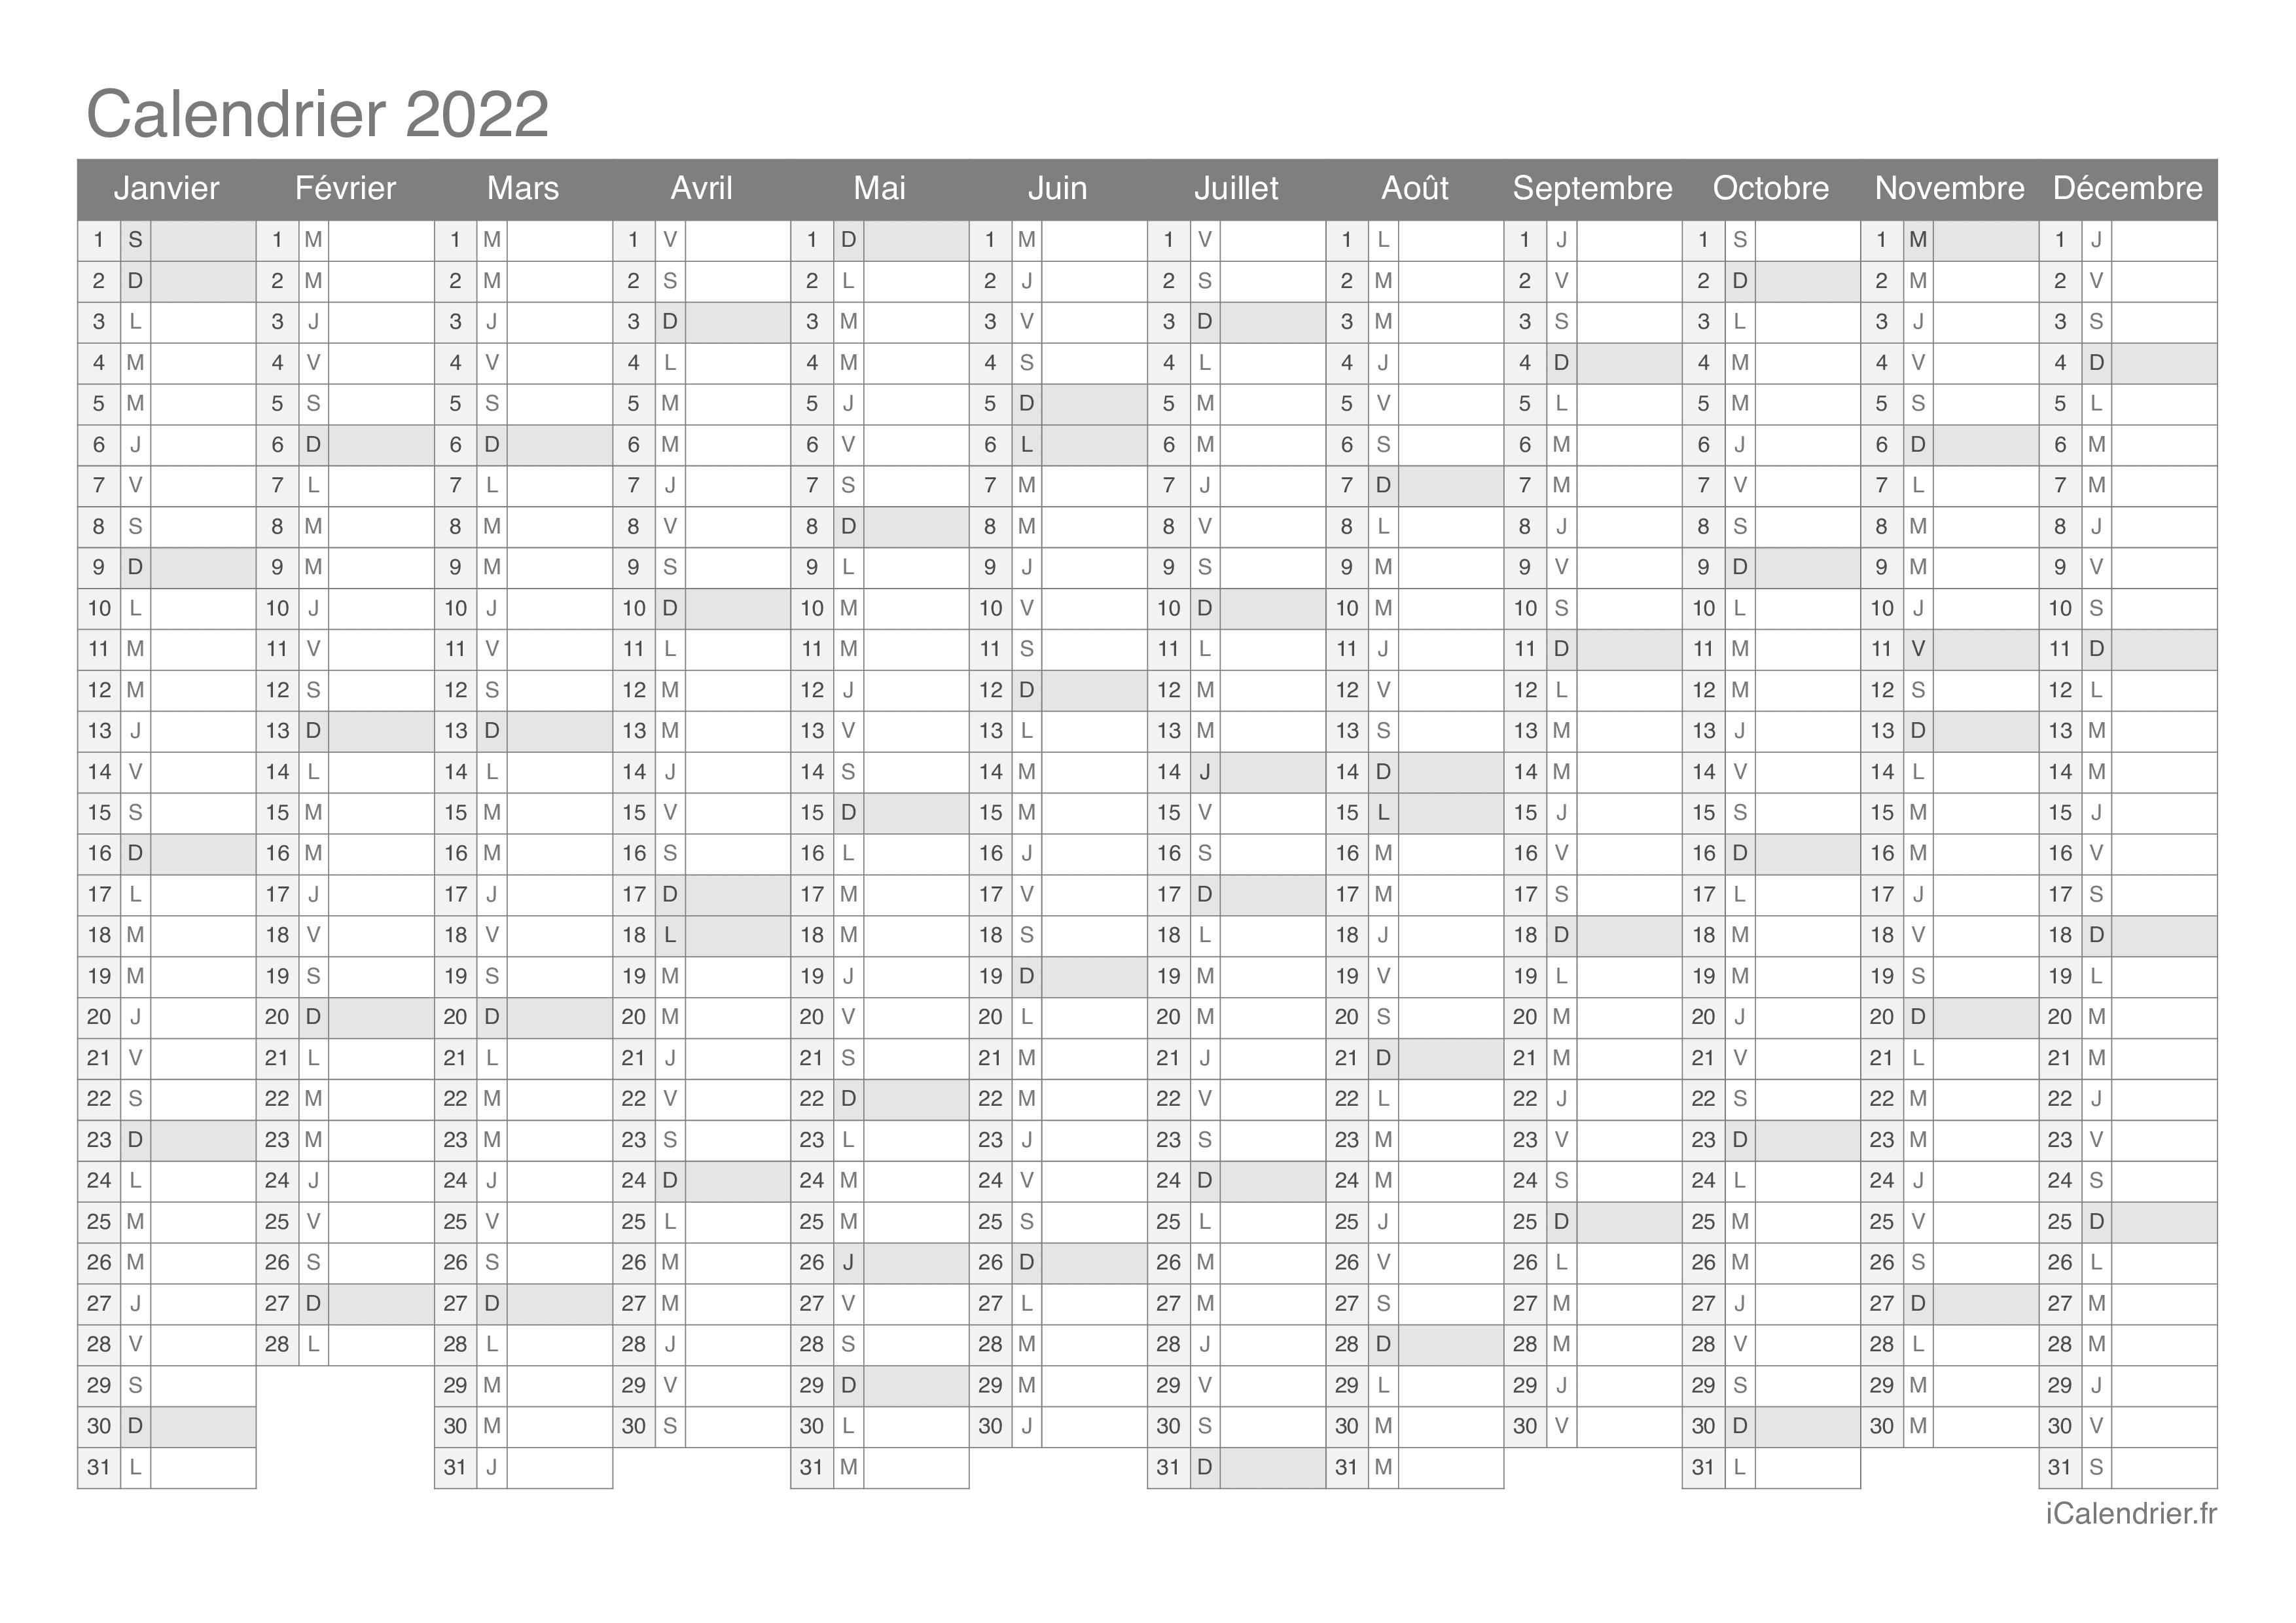 Calendrier 2022 Photo Calendrier 2022 à imprimer PDF et Excel   iCalendrier